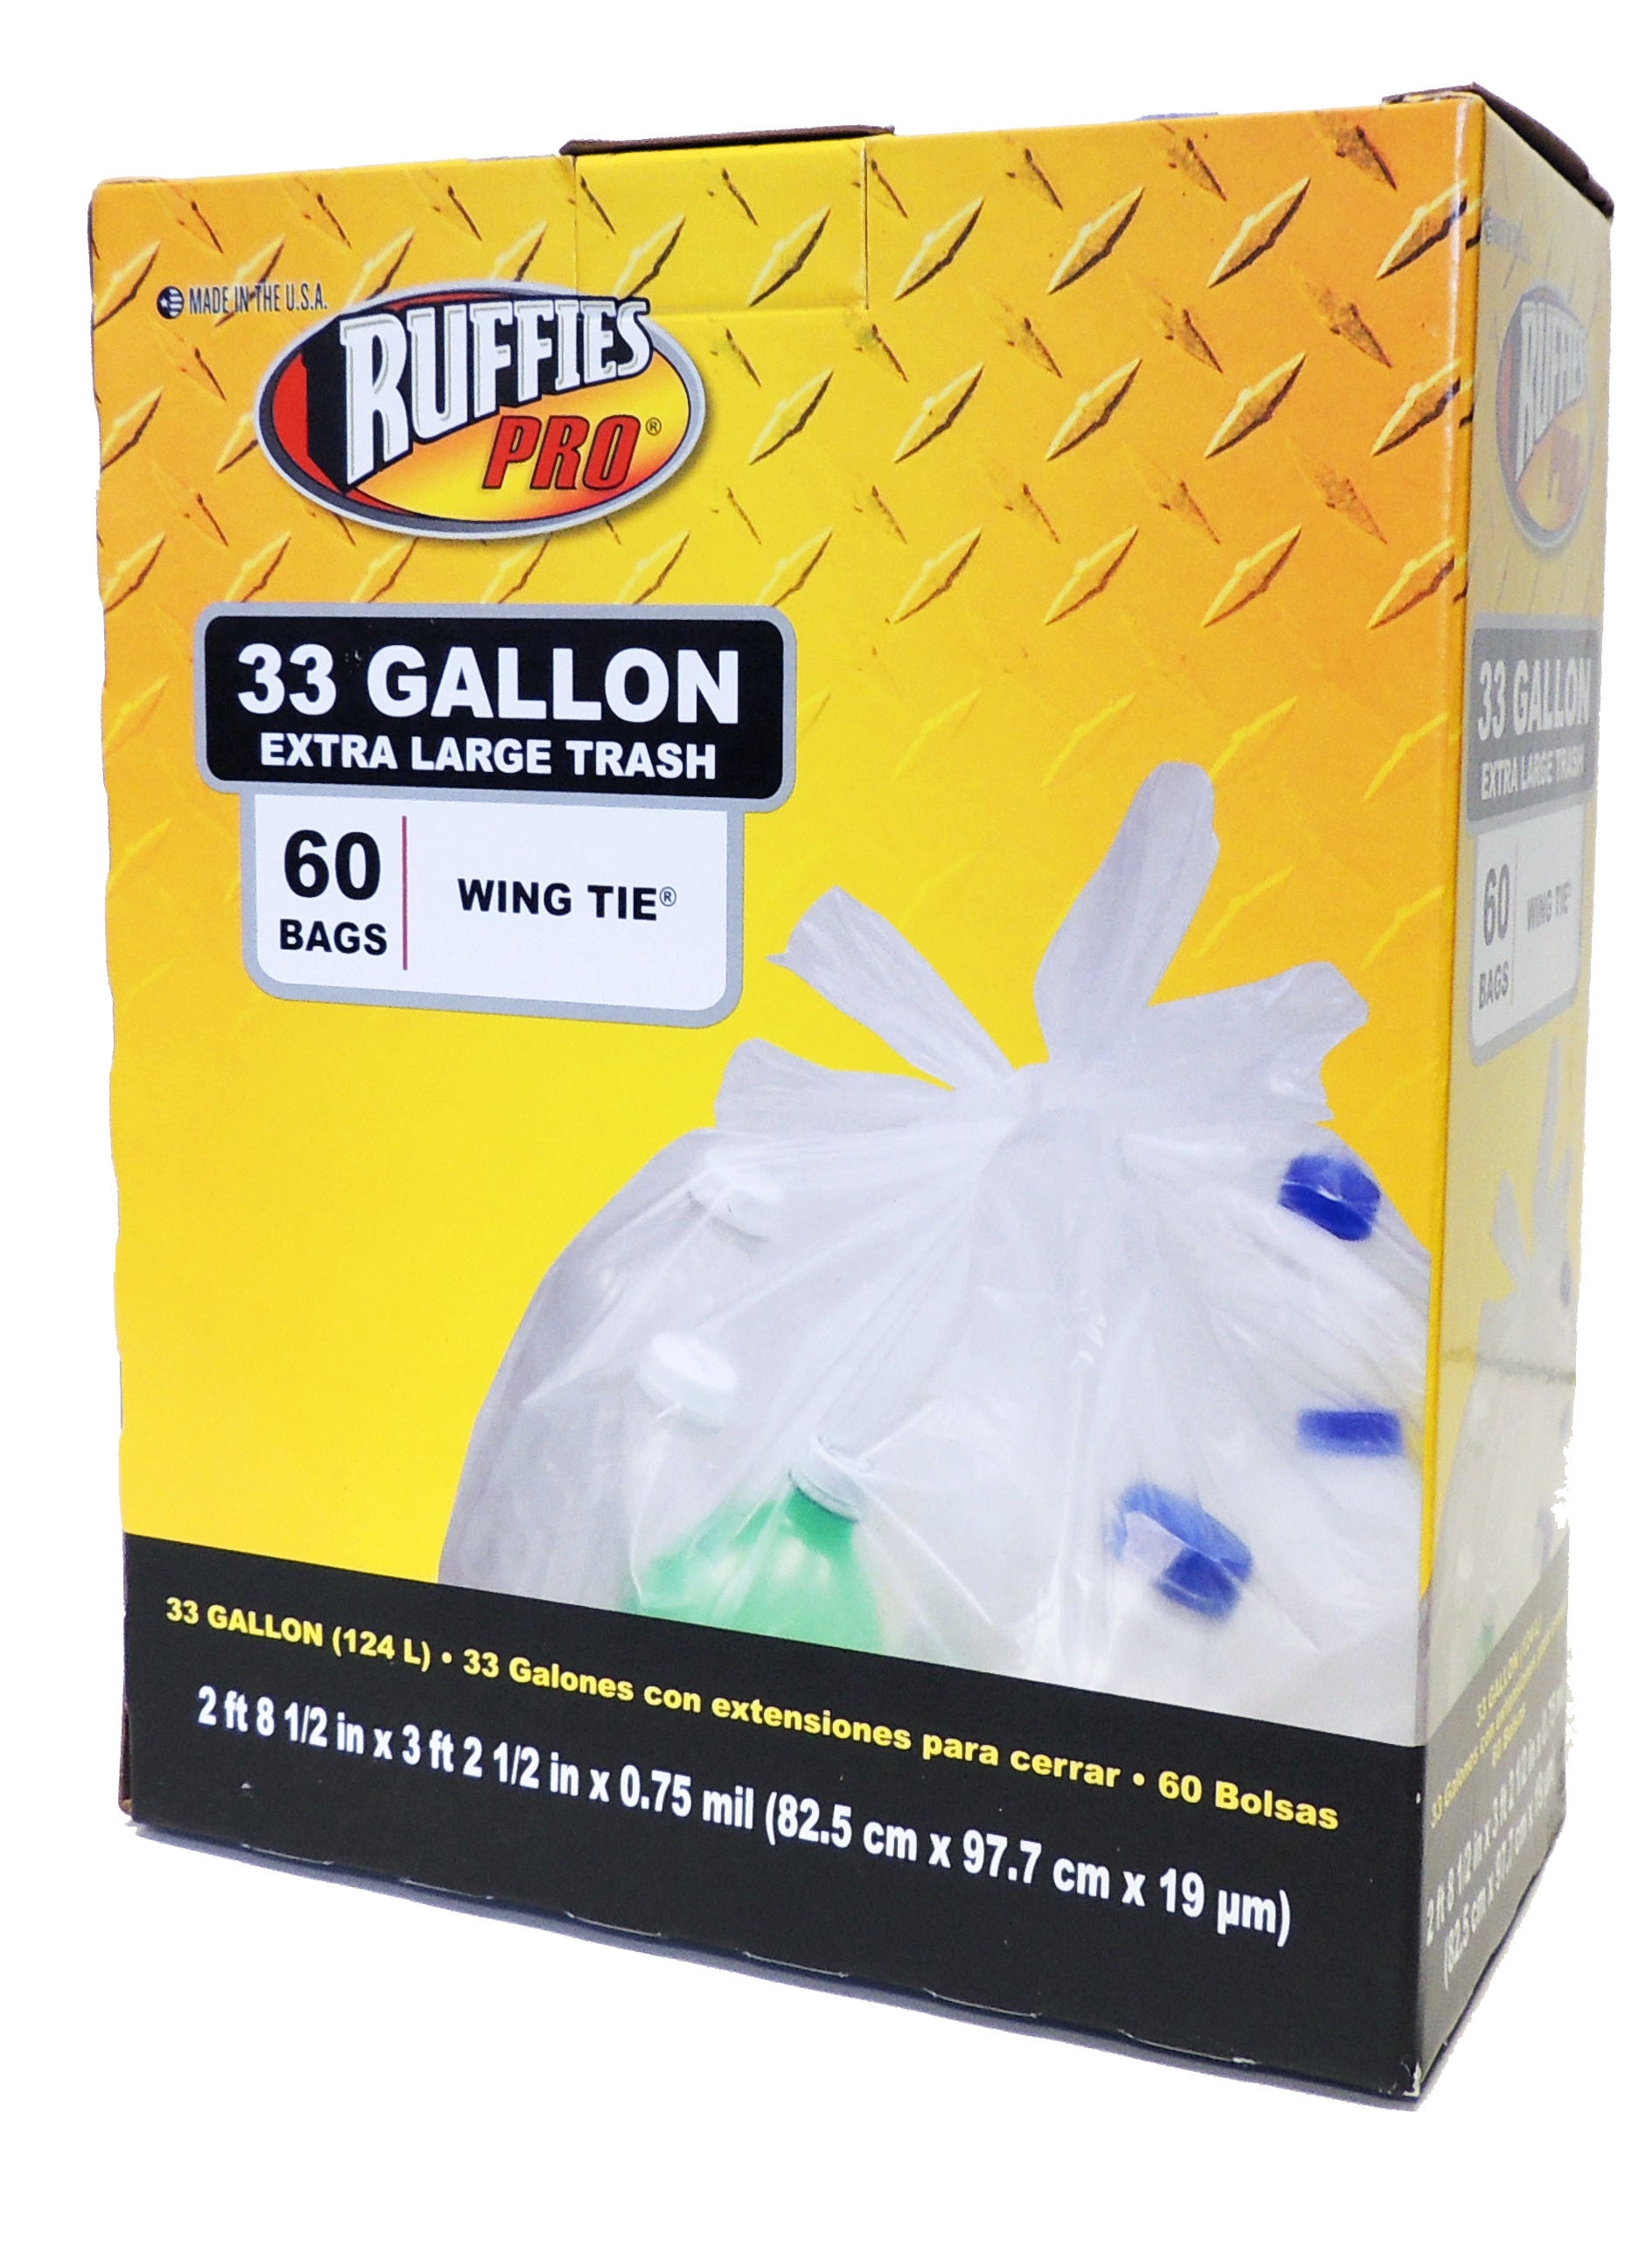 7 to 8 Gallon / 30 Liter Gallon Drawstring Trash Bag, Medium Garbage Bags,  60 Ct